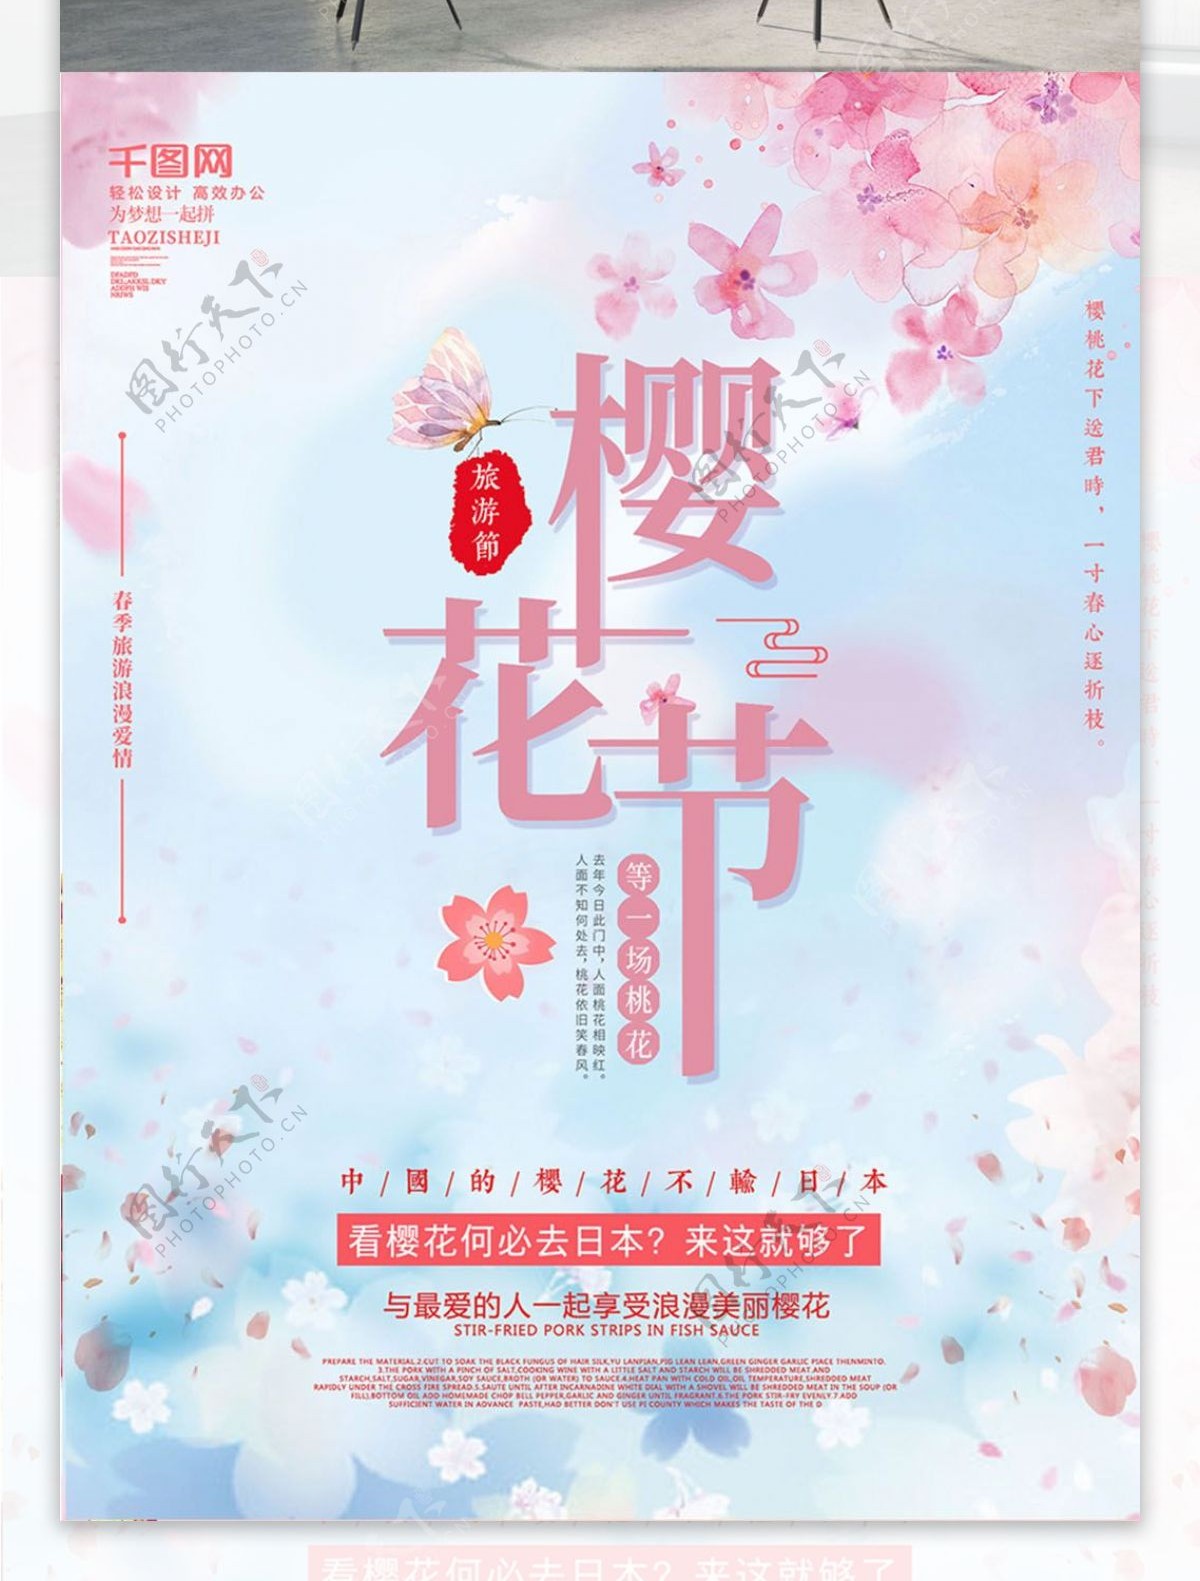 简约粉色梦幻系列樱花节海报